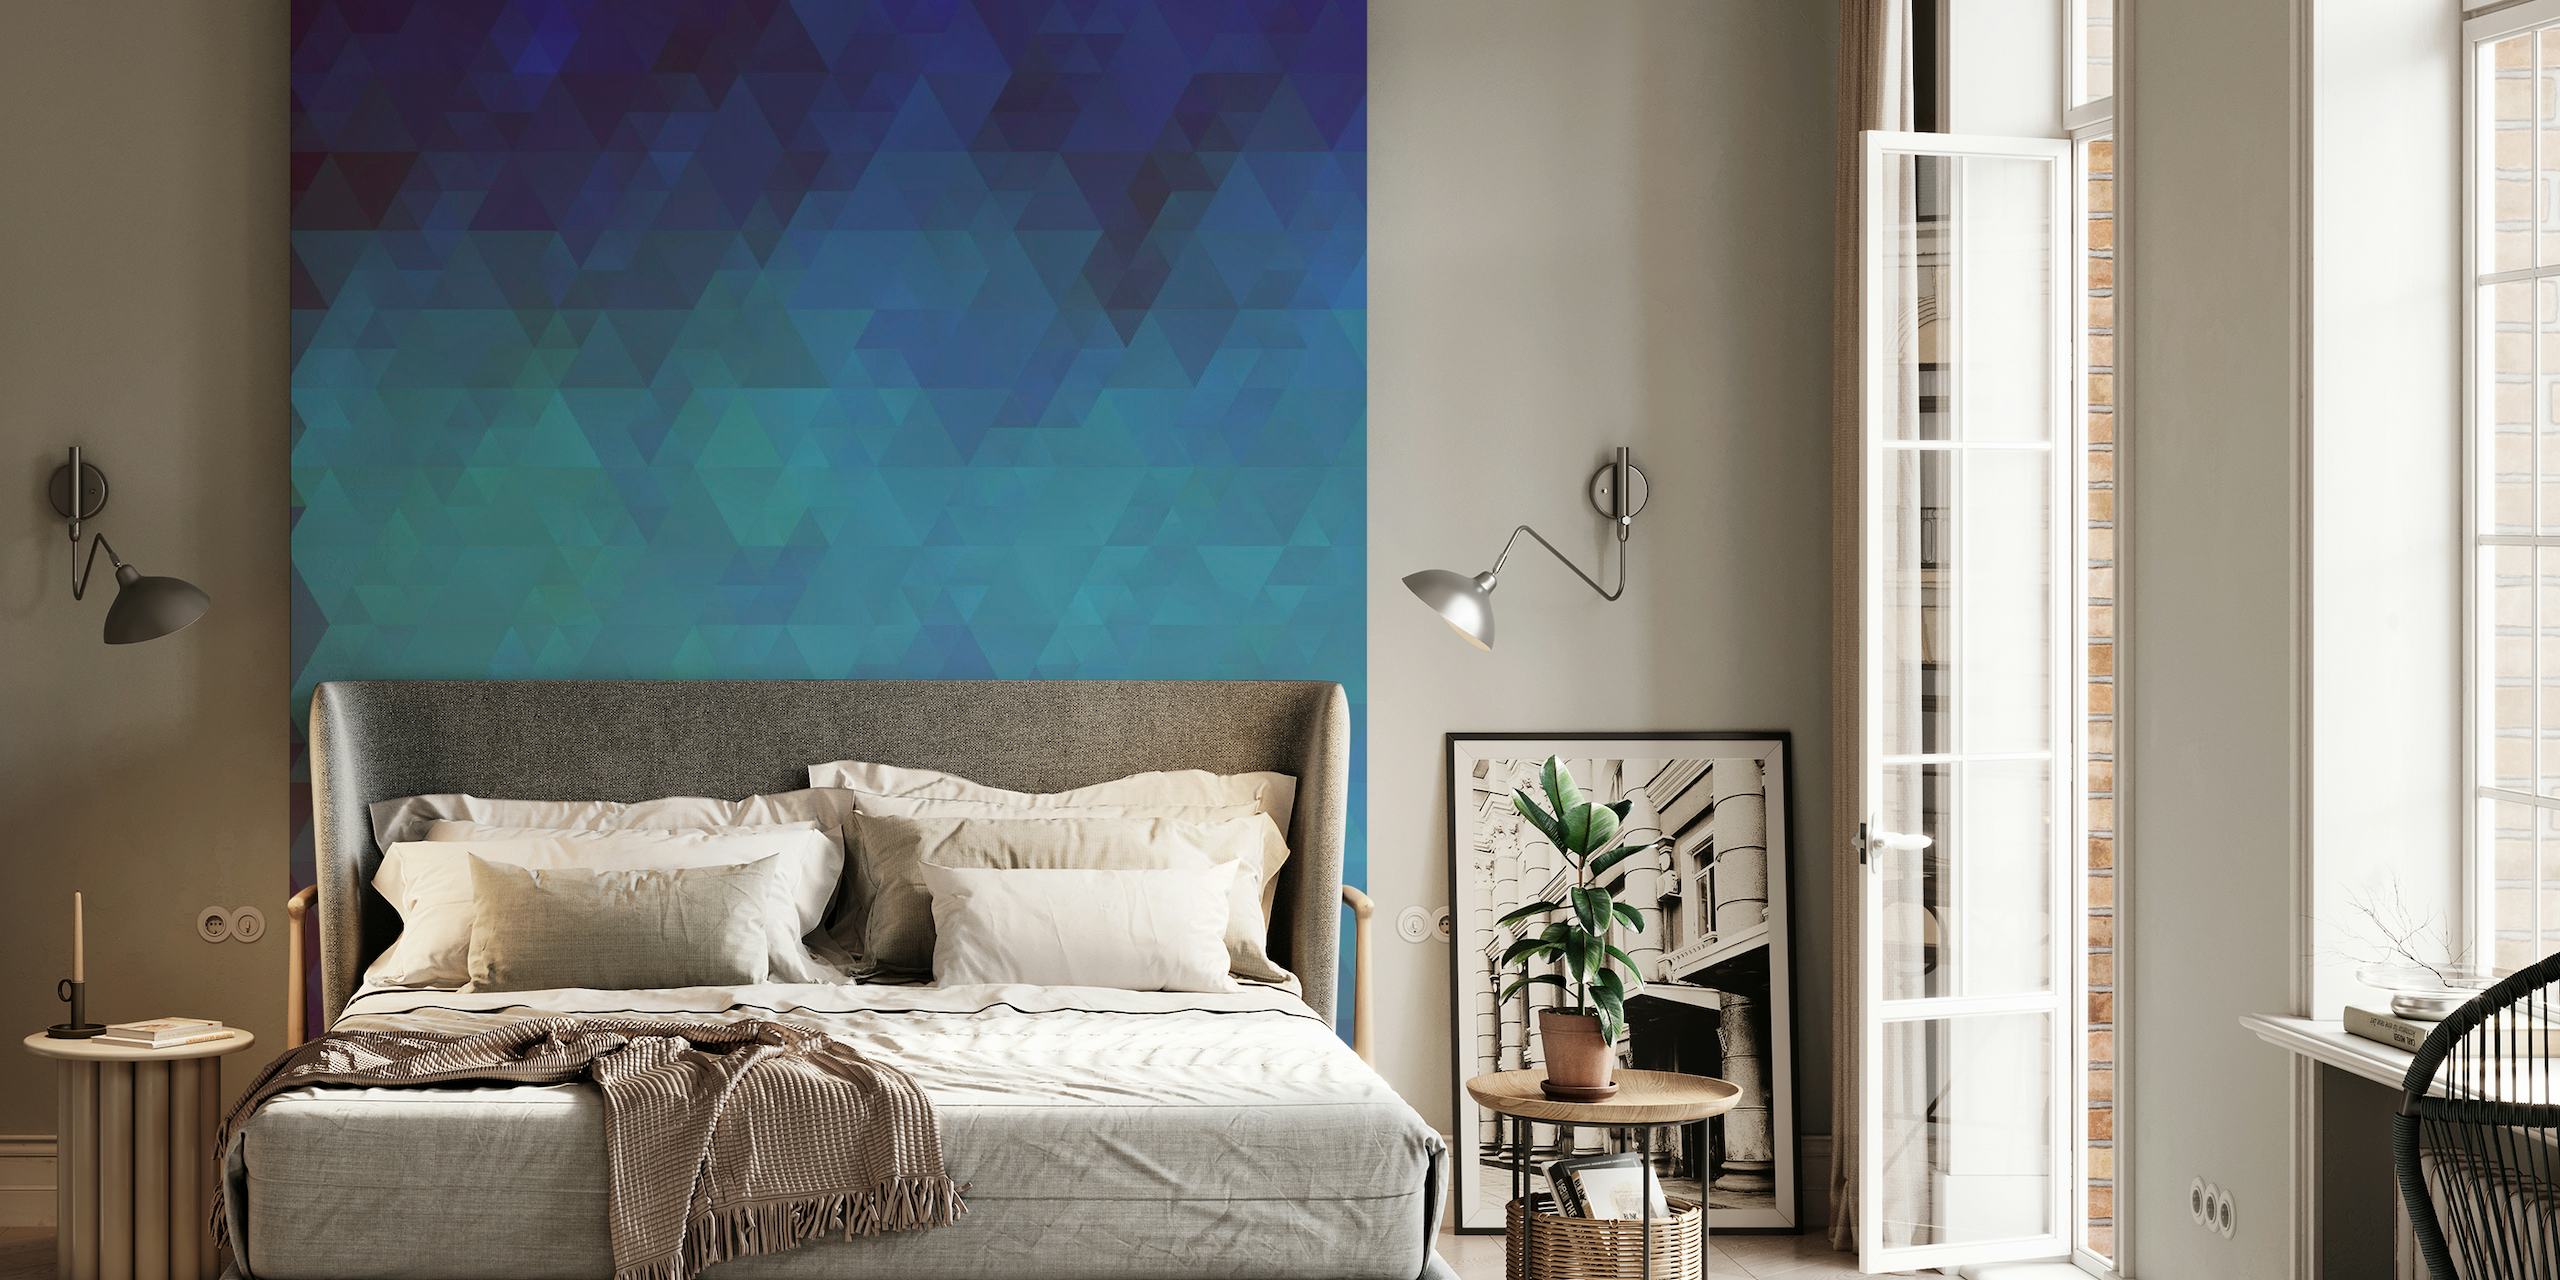 Geometrische blauwe driehoek patroon muurschildering